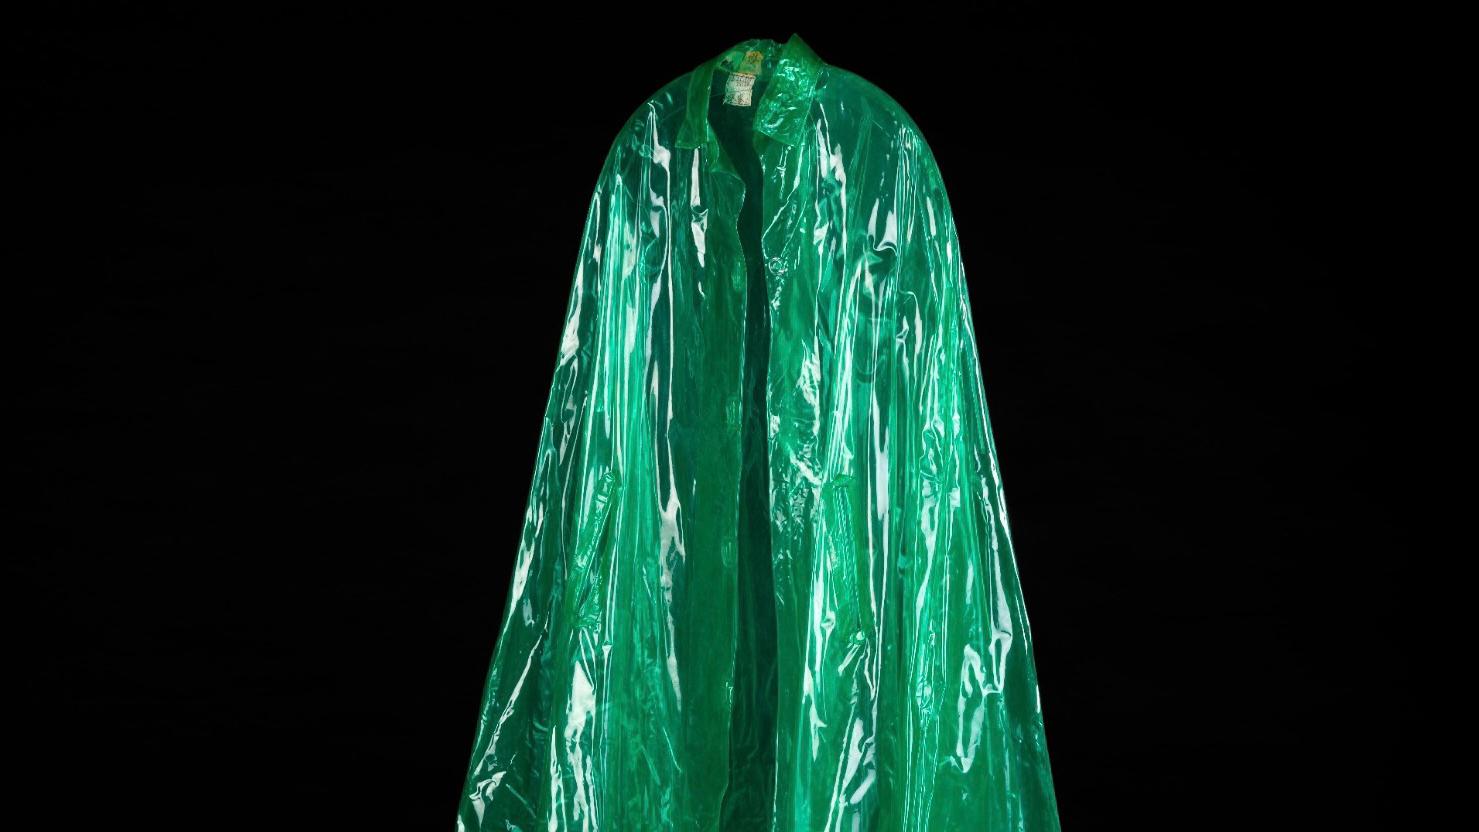 Green plastic raincoat